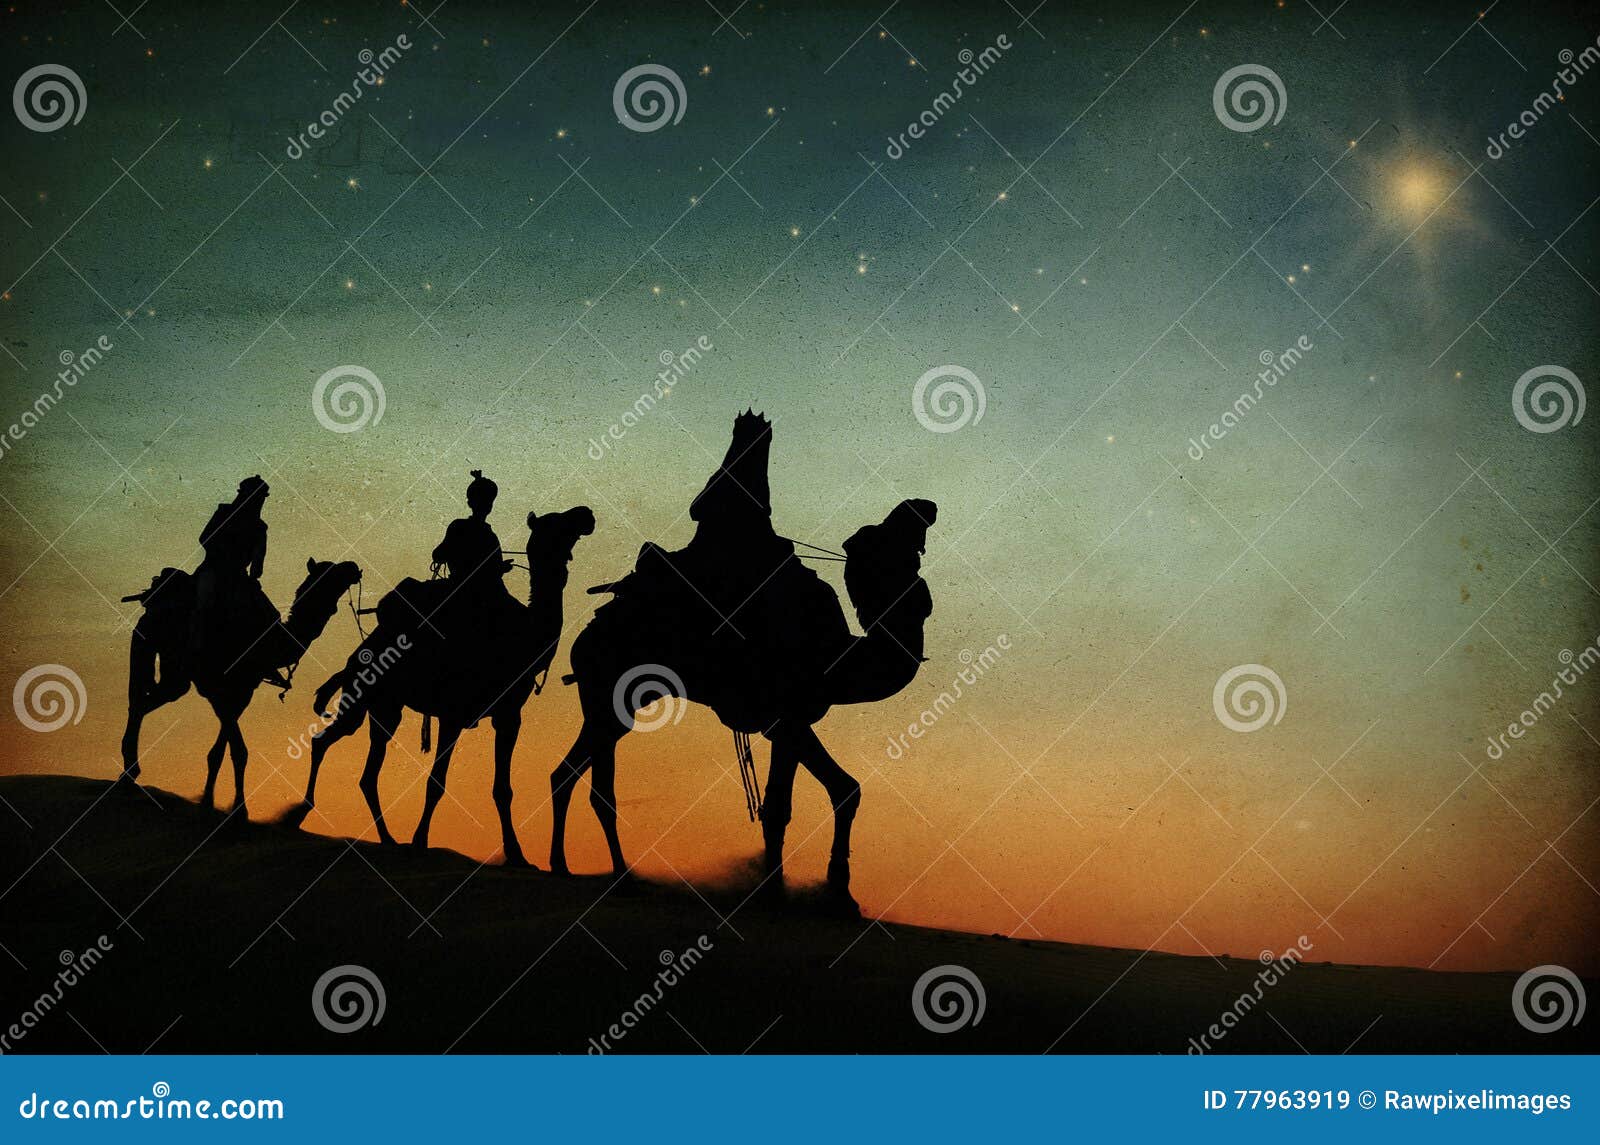 three kings desert star of bethlehem nativity concept